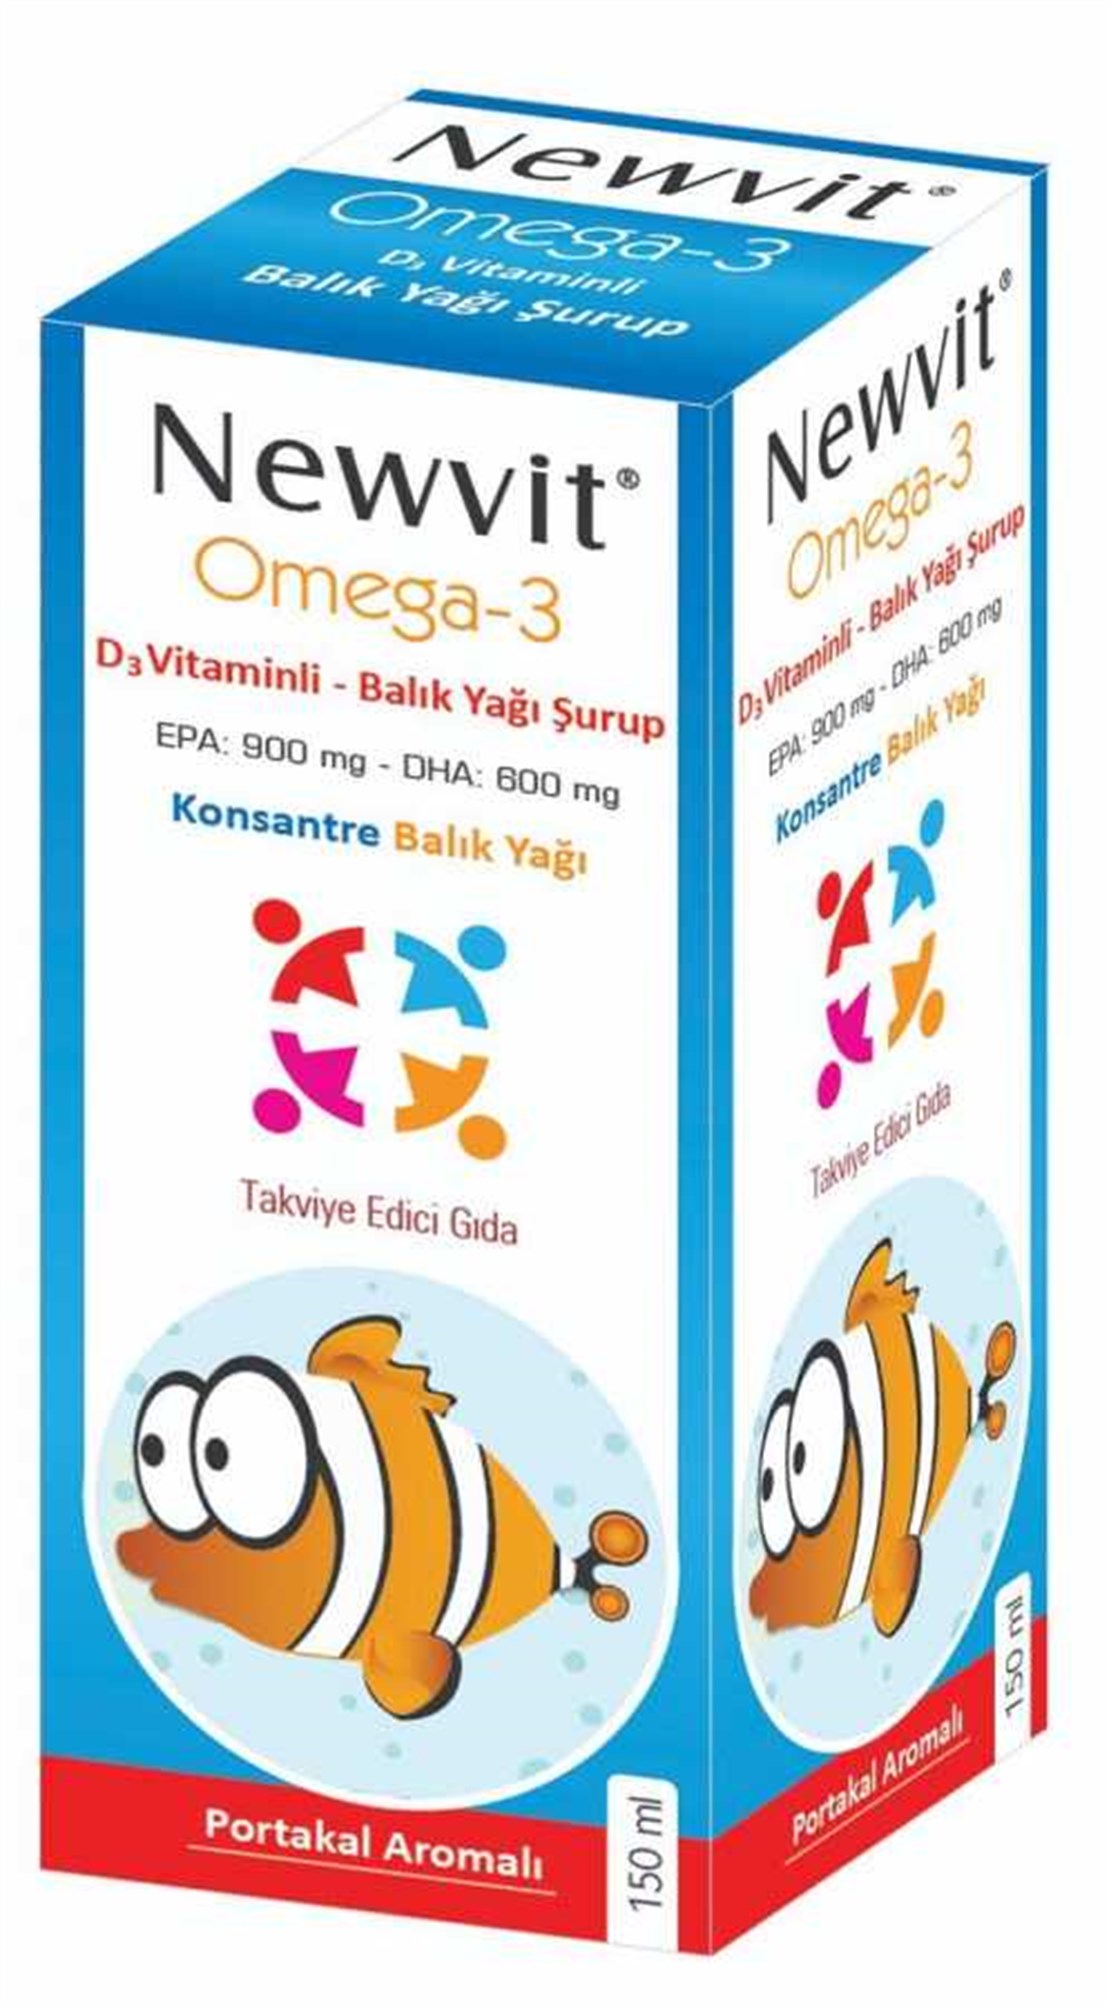 Newvit Omega 3 D Vitaminli Balık Yağı Şurup kullanıcı yorumları